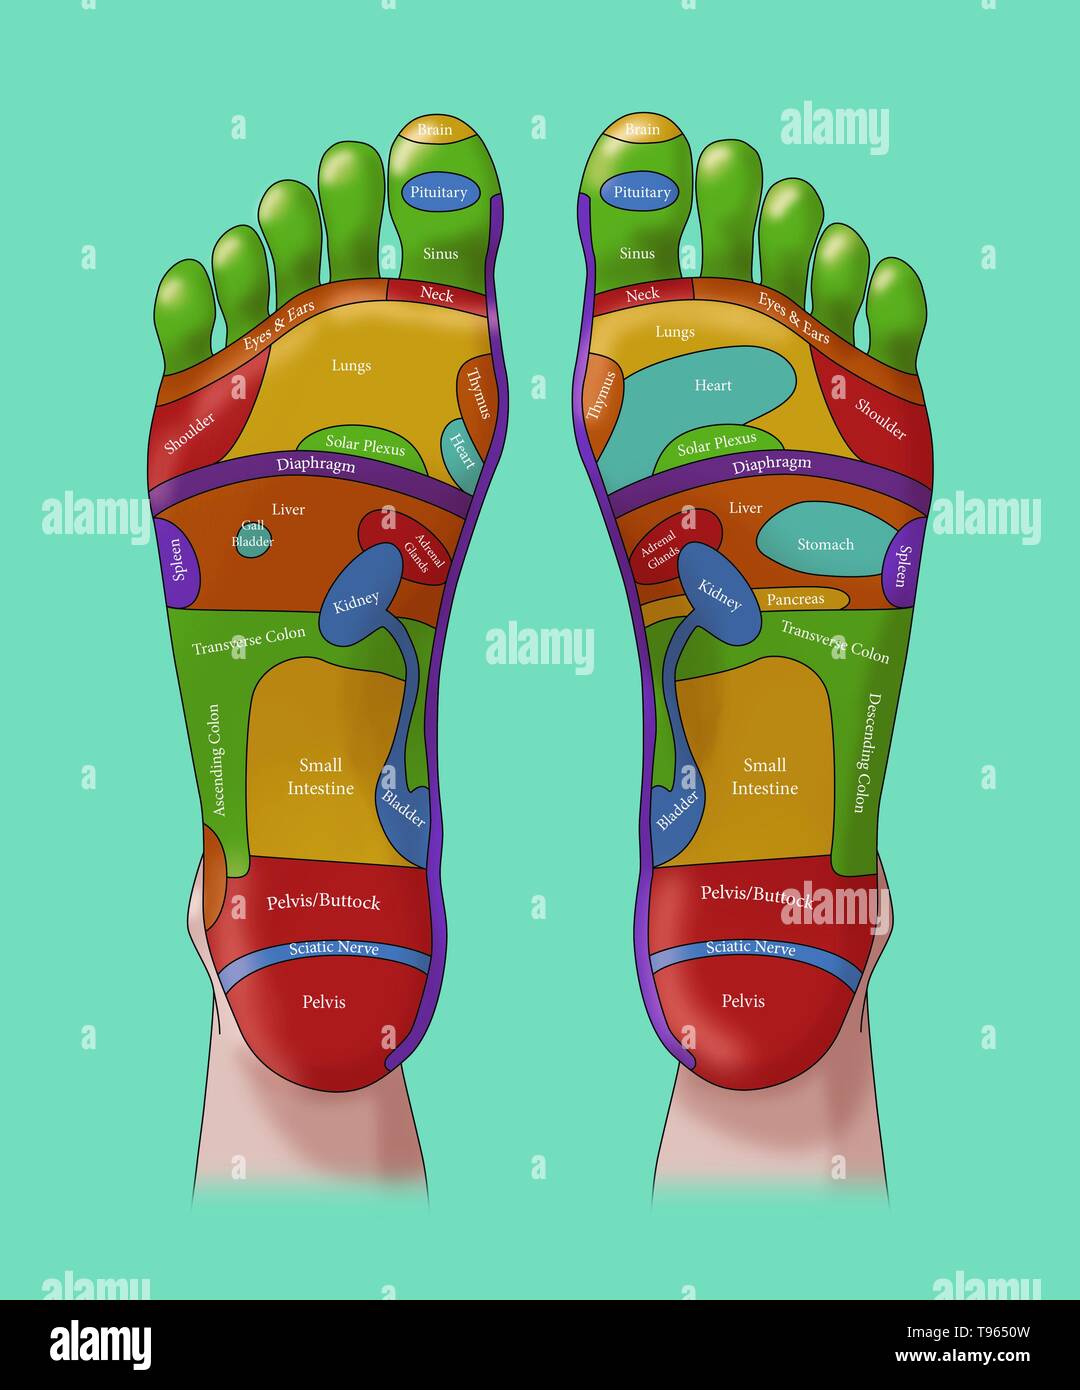 Abbildung der Füße, Fuß-Reflexzonenmassage Zonen. Eine Fußreflexzonenmassage ist eine Form der alternativen Medizin, in dem die Zonen der Füße geglaubt werden in verschiedenen Teilen des Körpers zu entsprechen. Stockfoto